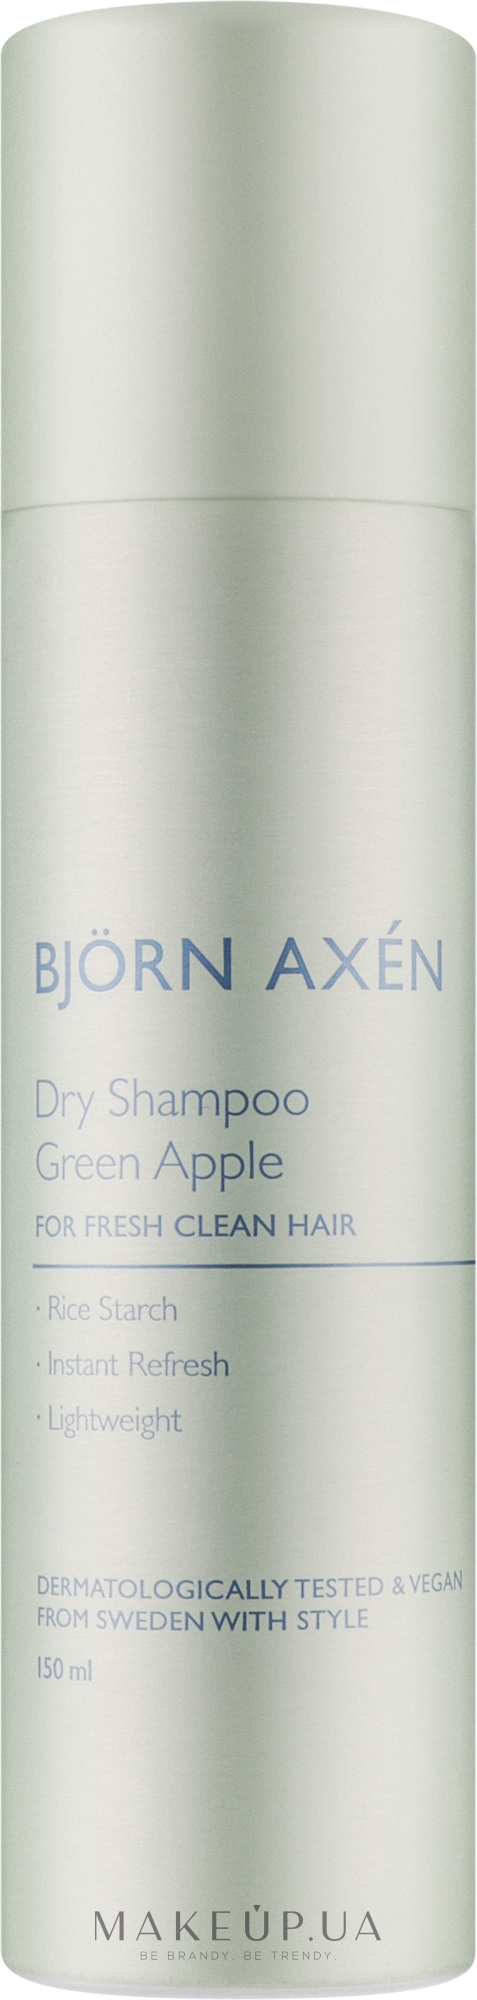 Сухой шампунь с ароматом зеленого яблока - BjOrn AxEn Dry Shampoo Green Apple — фото 150ml